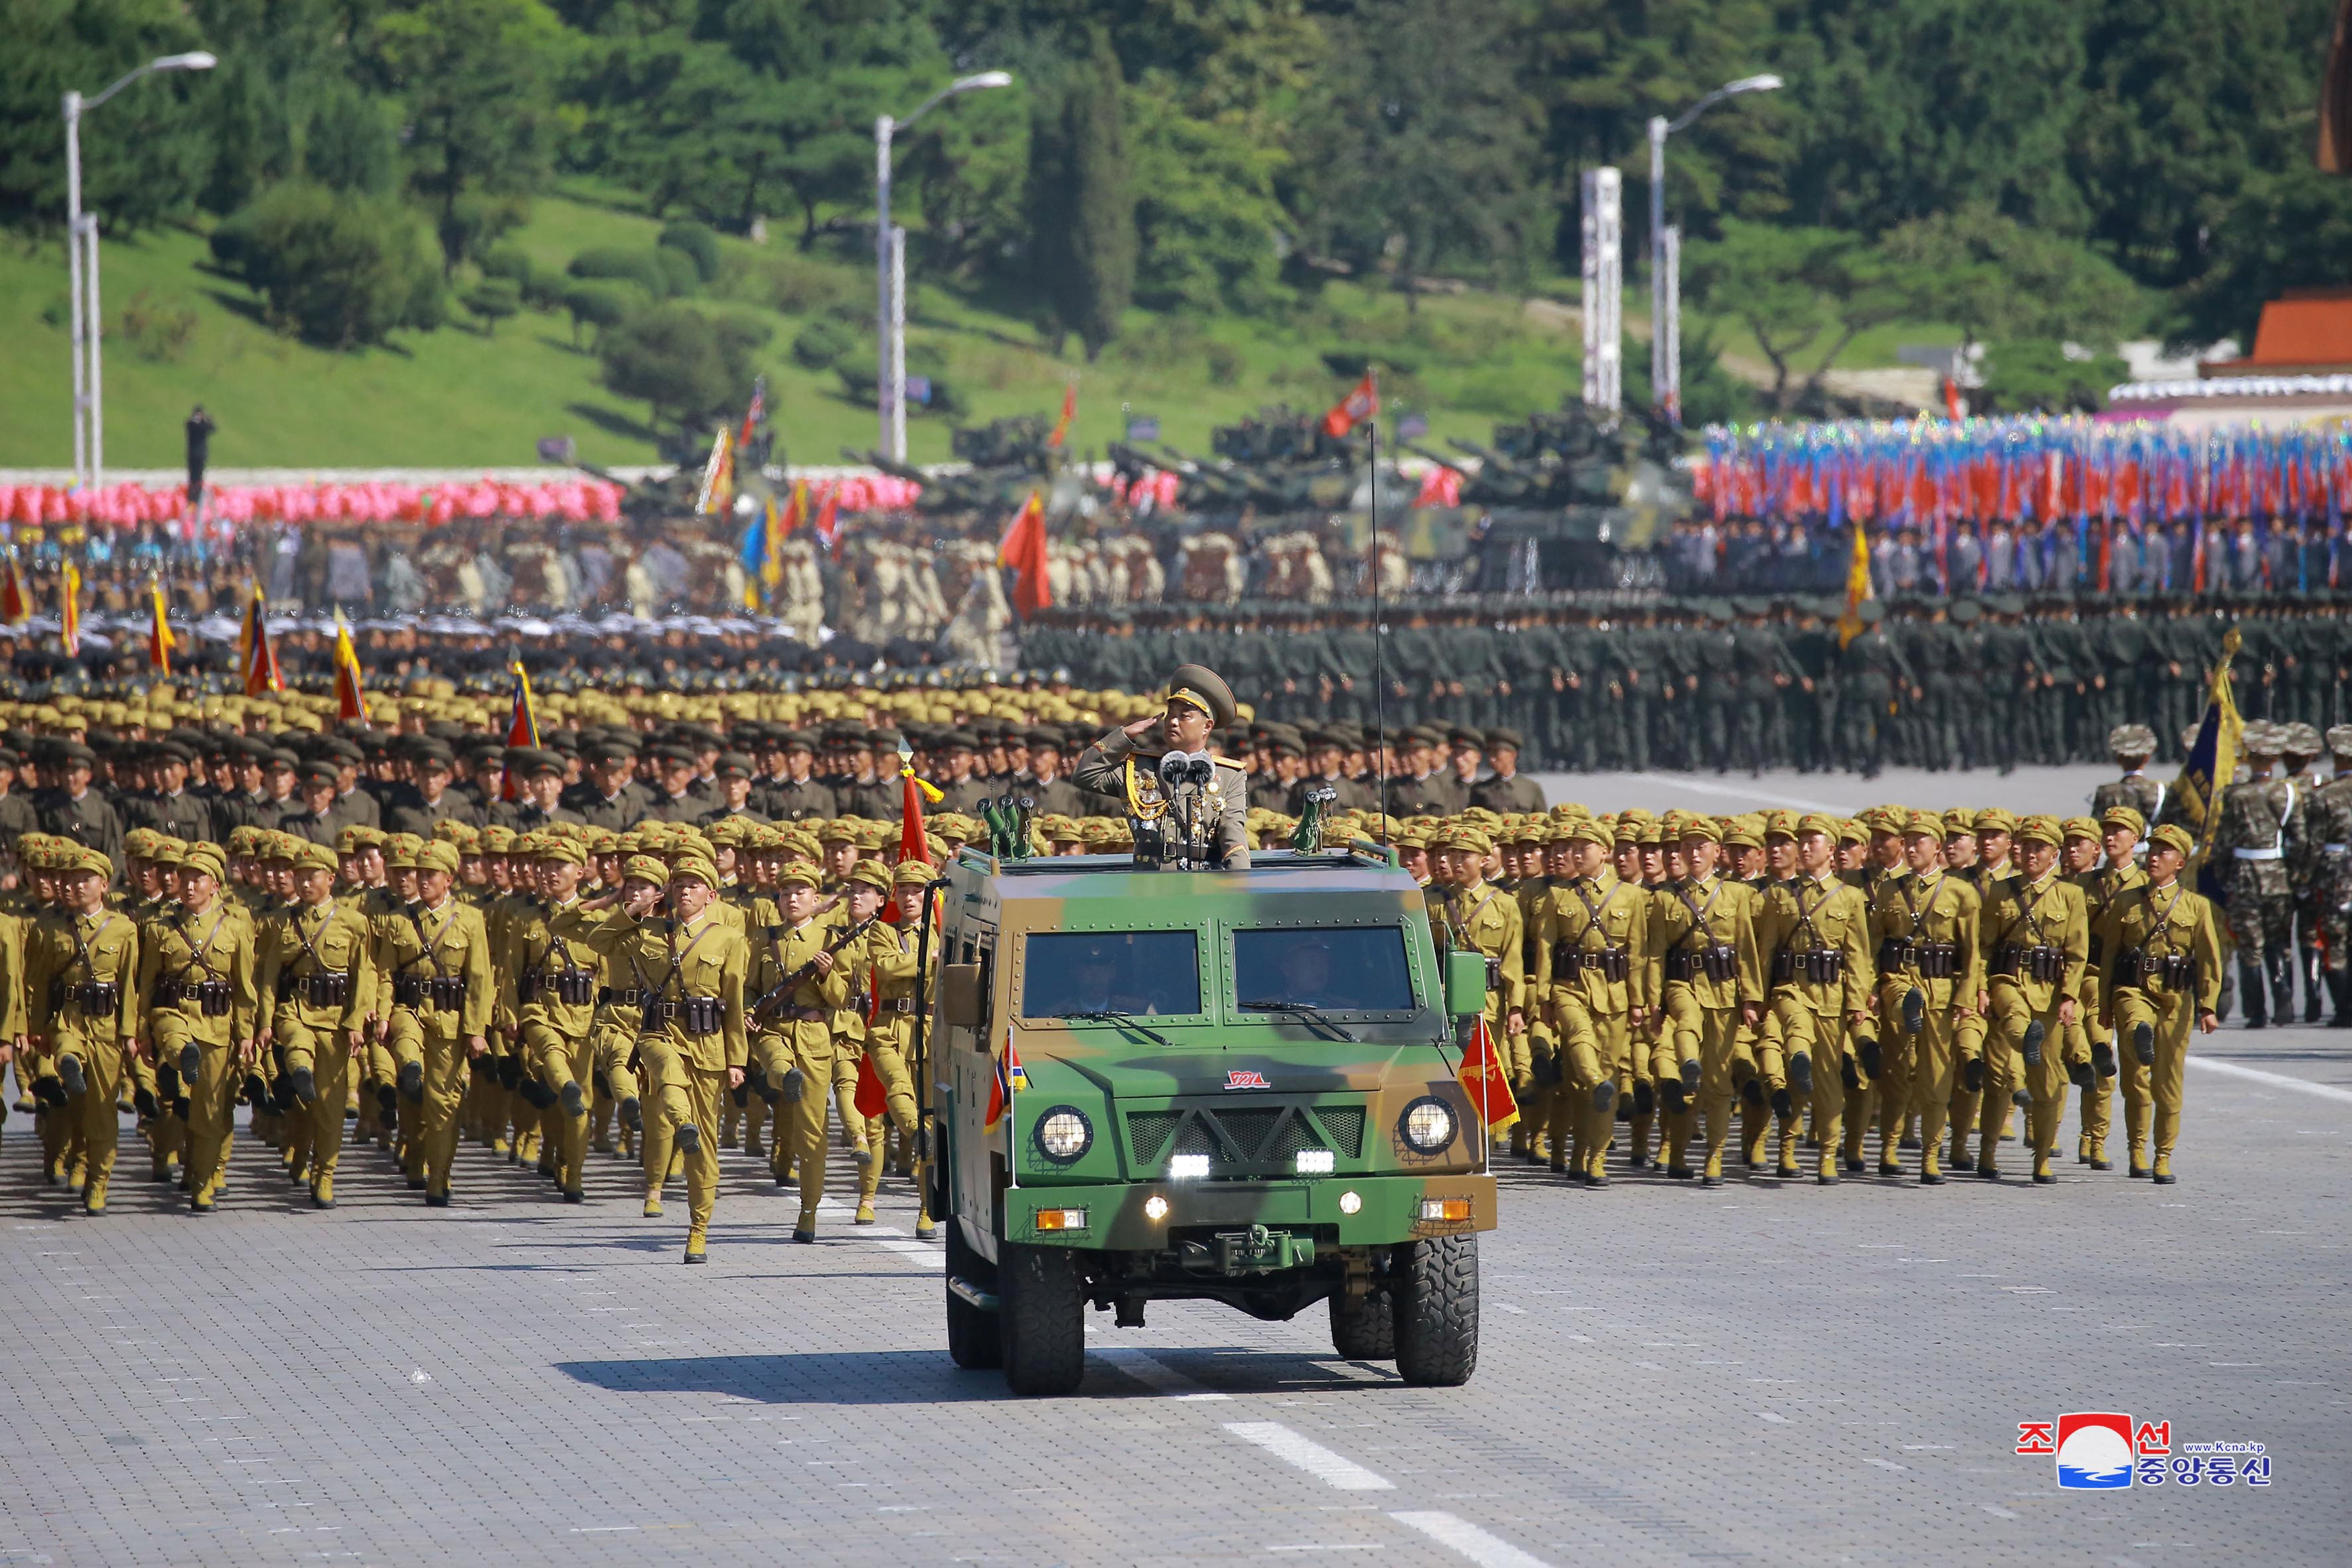 عروض عسكرية فى كوريا الشمالية احتفالا باليوم الوطنى